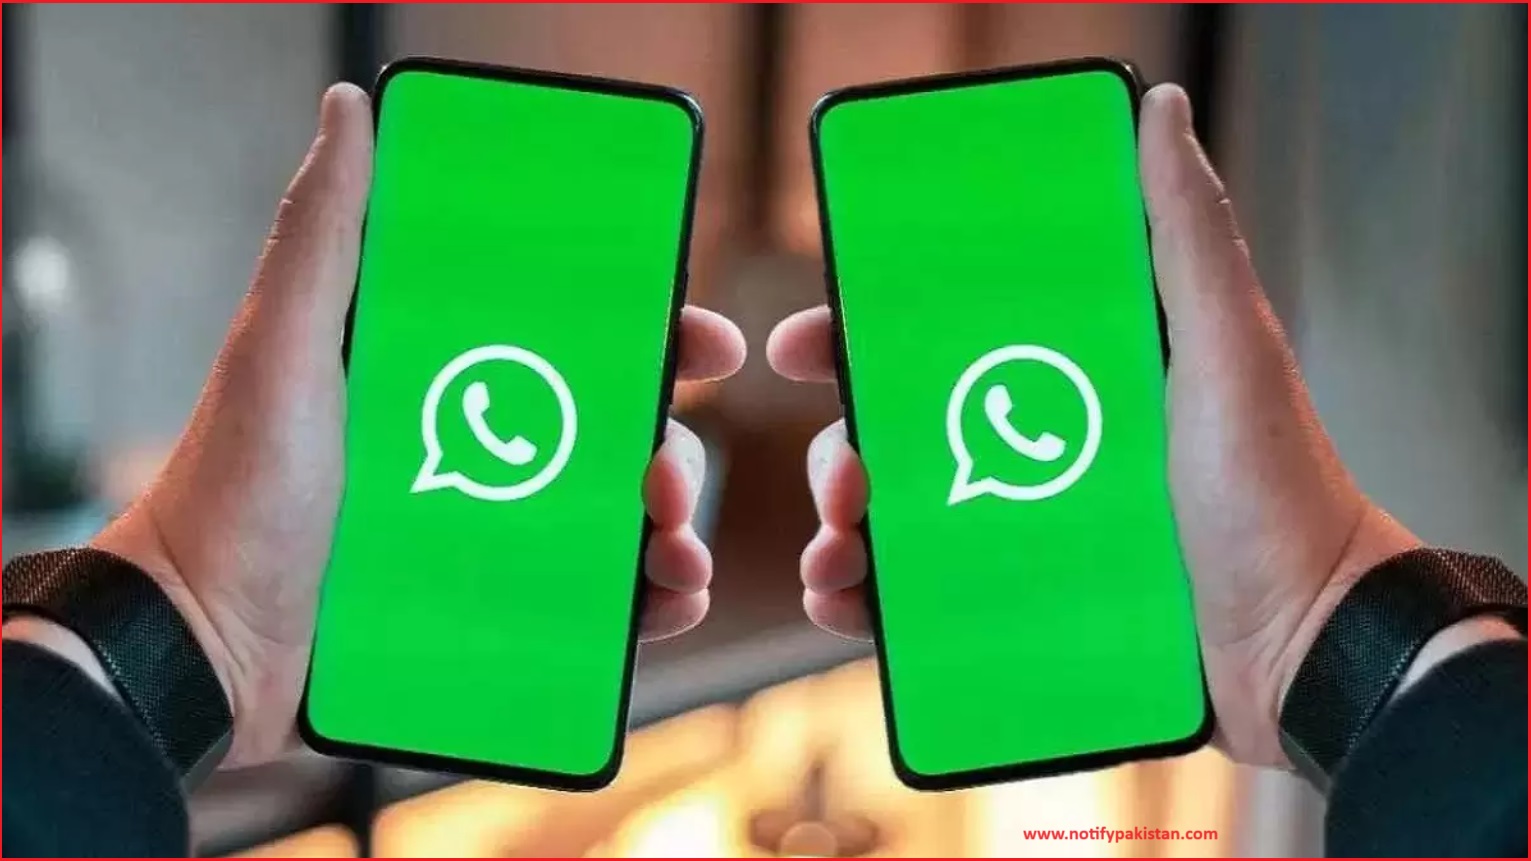 WhatsApp Screen Sharing